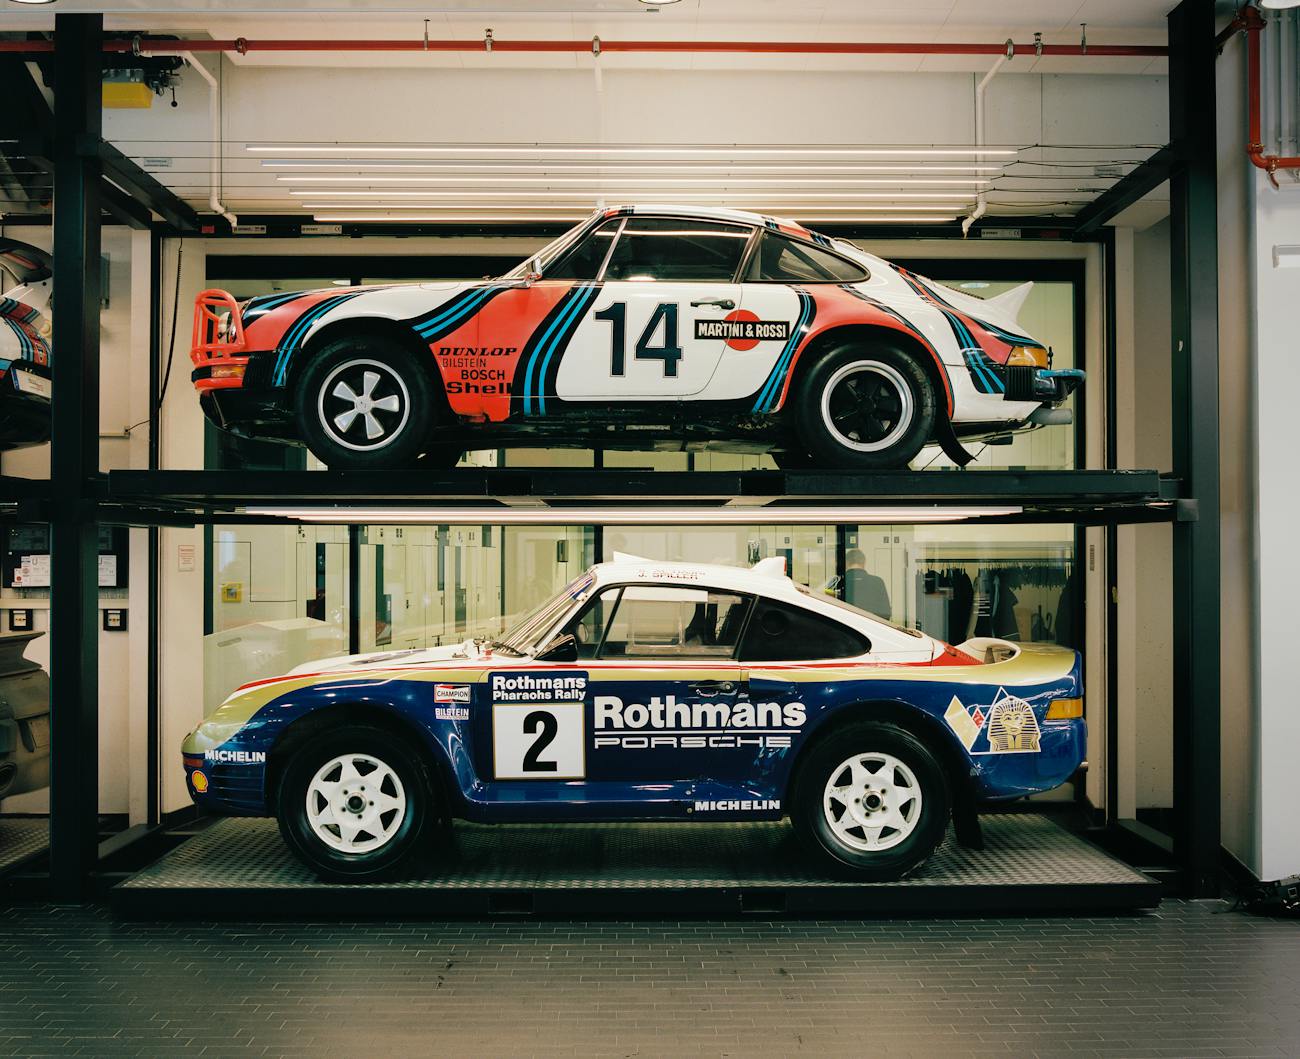 Porsche racecars in racing livery in the Porsche Museum workshop